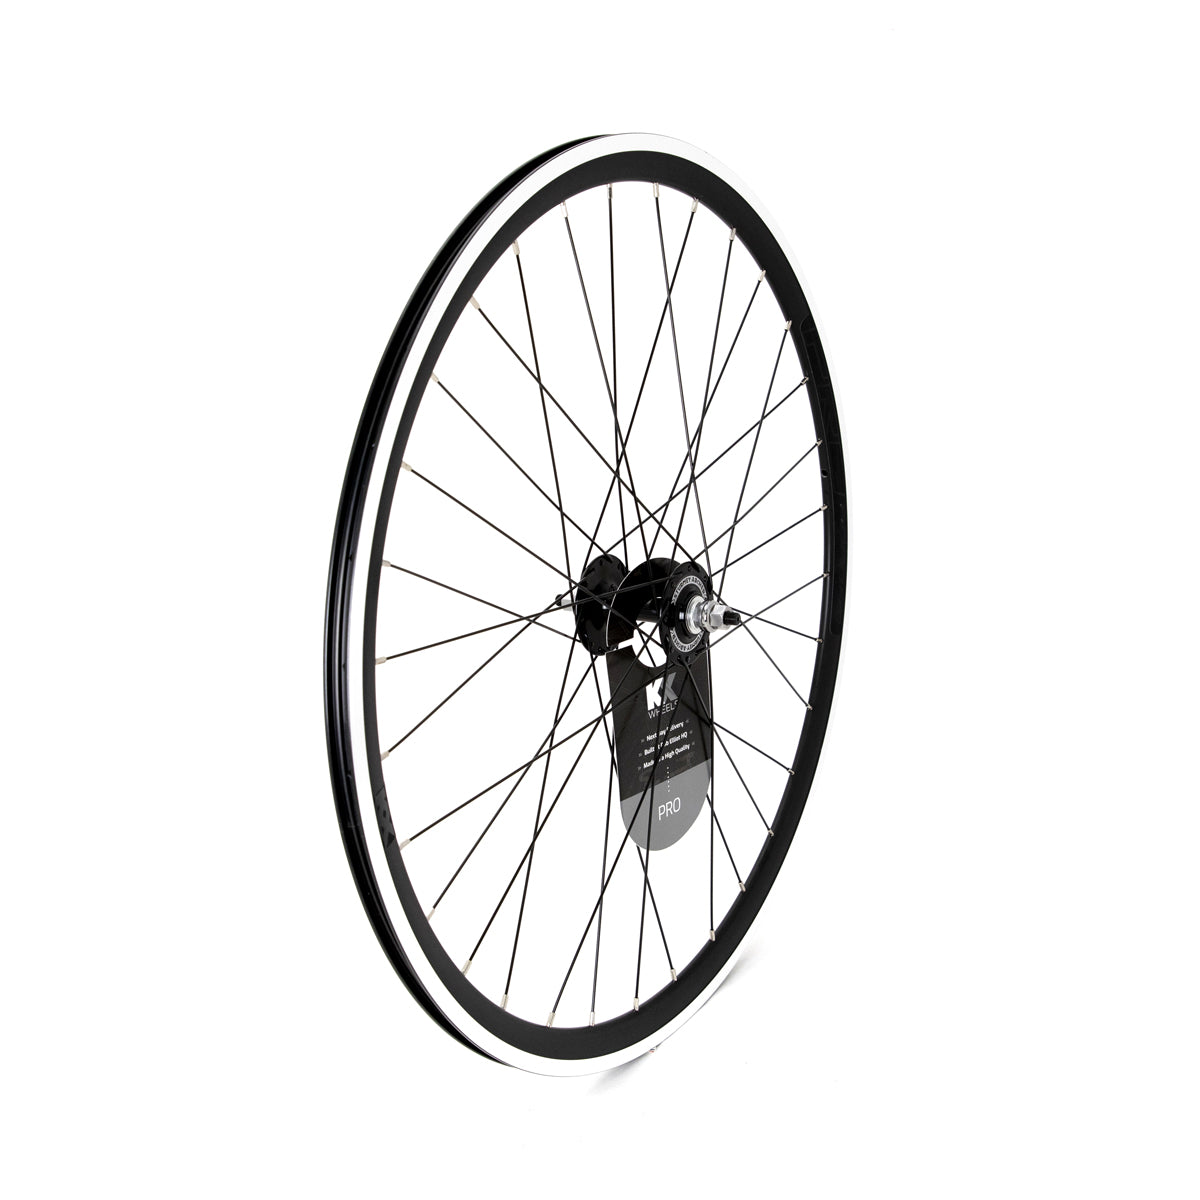 KX Wheels Pro FXD 700c Front Bike Wheel